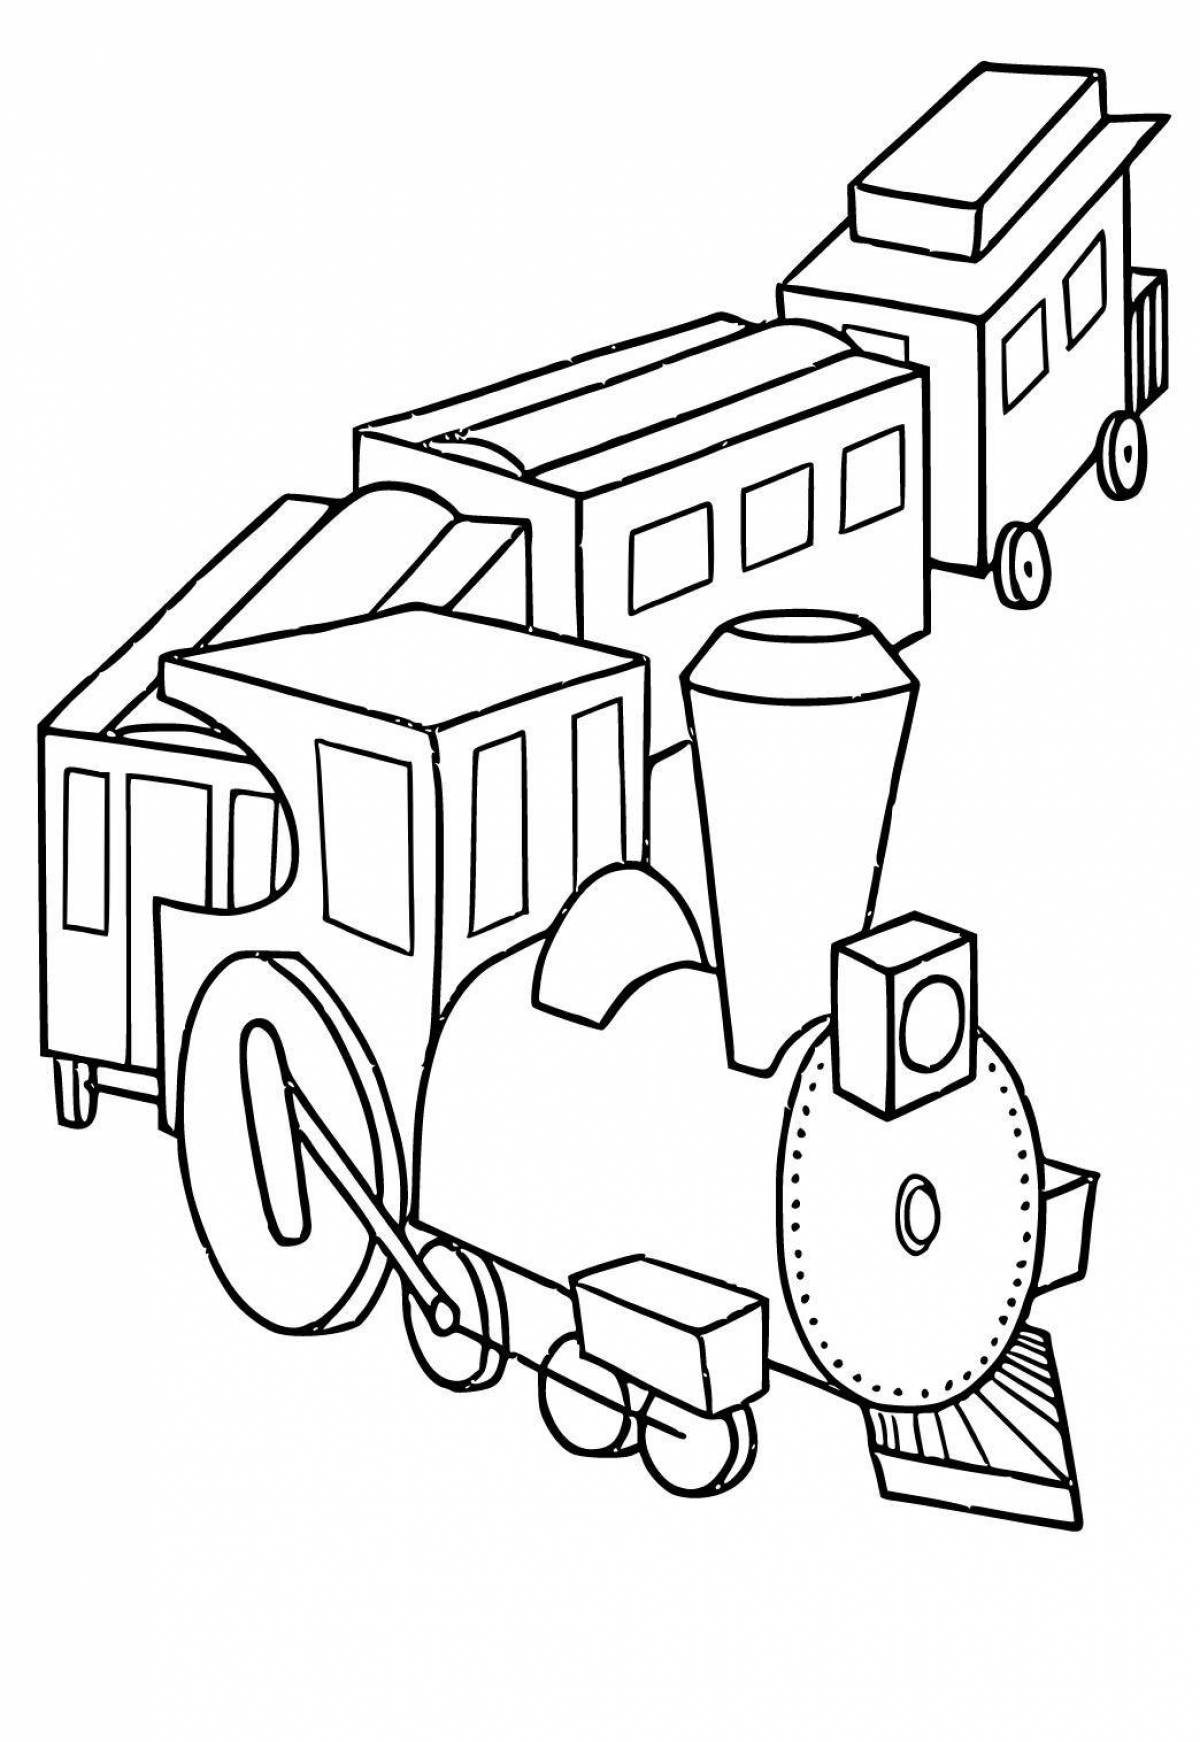 Увлекательная раскраска поезда для малышей 2-3 лет